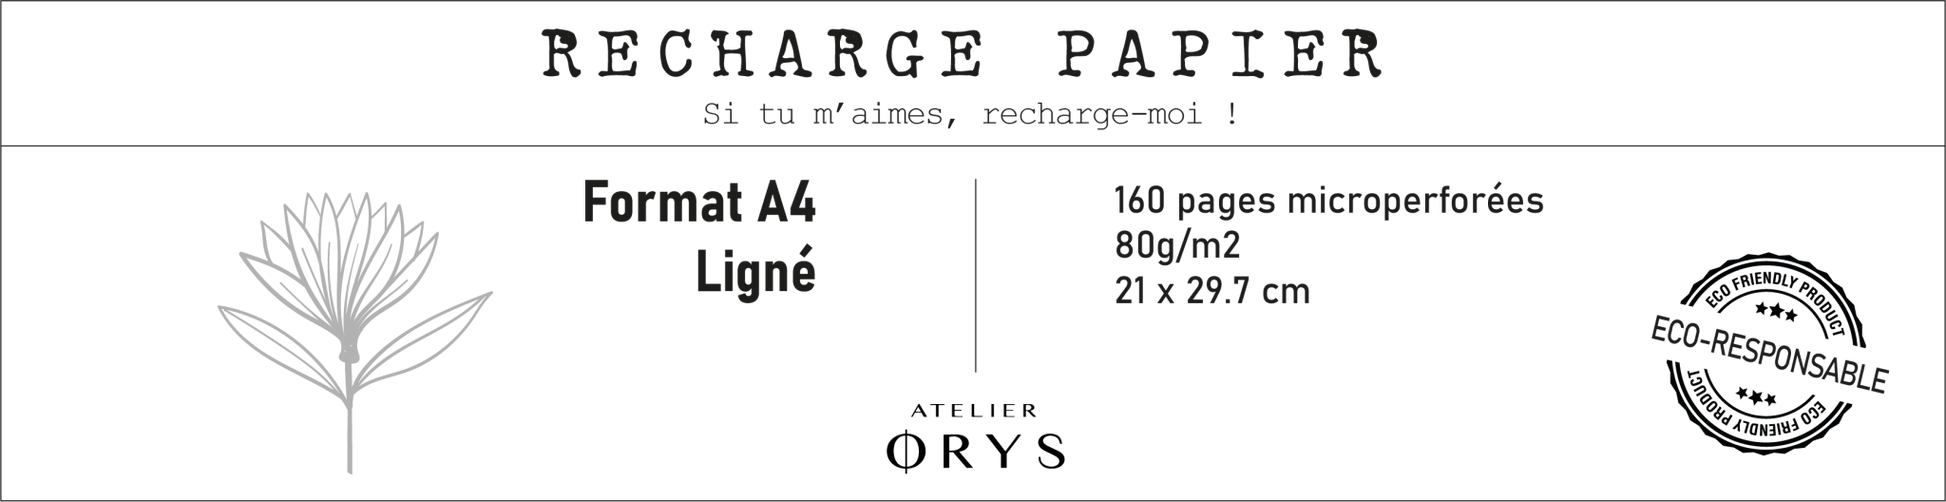 Recharge grand carnet - Lignée - Atelier ORYS